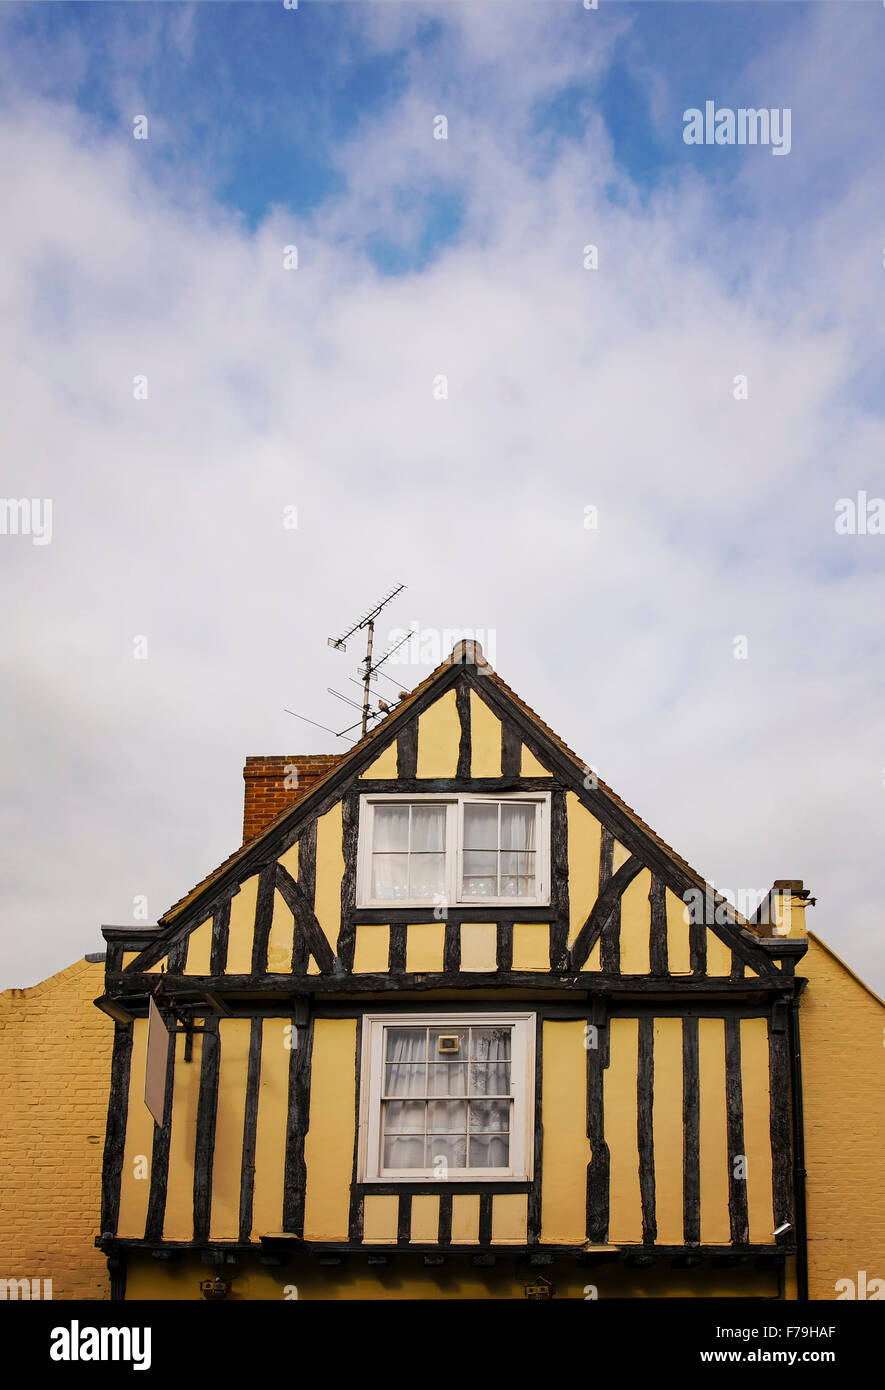 Imagen de el frontón de una casa con entramados de madera de color amarillo. En Canterbury, Inglaterra. Foto de stock